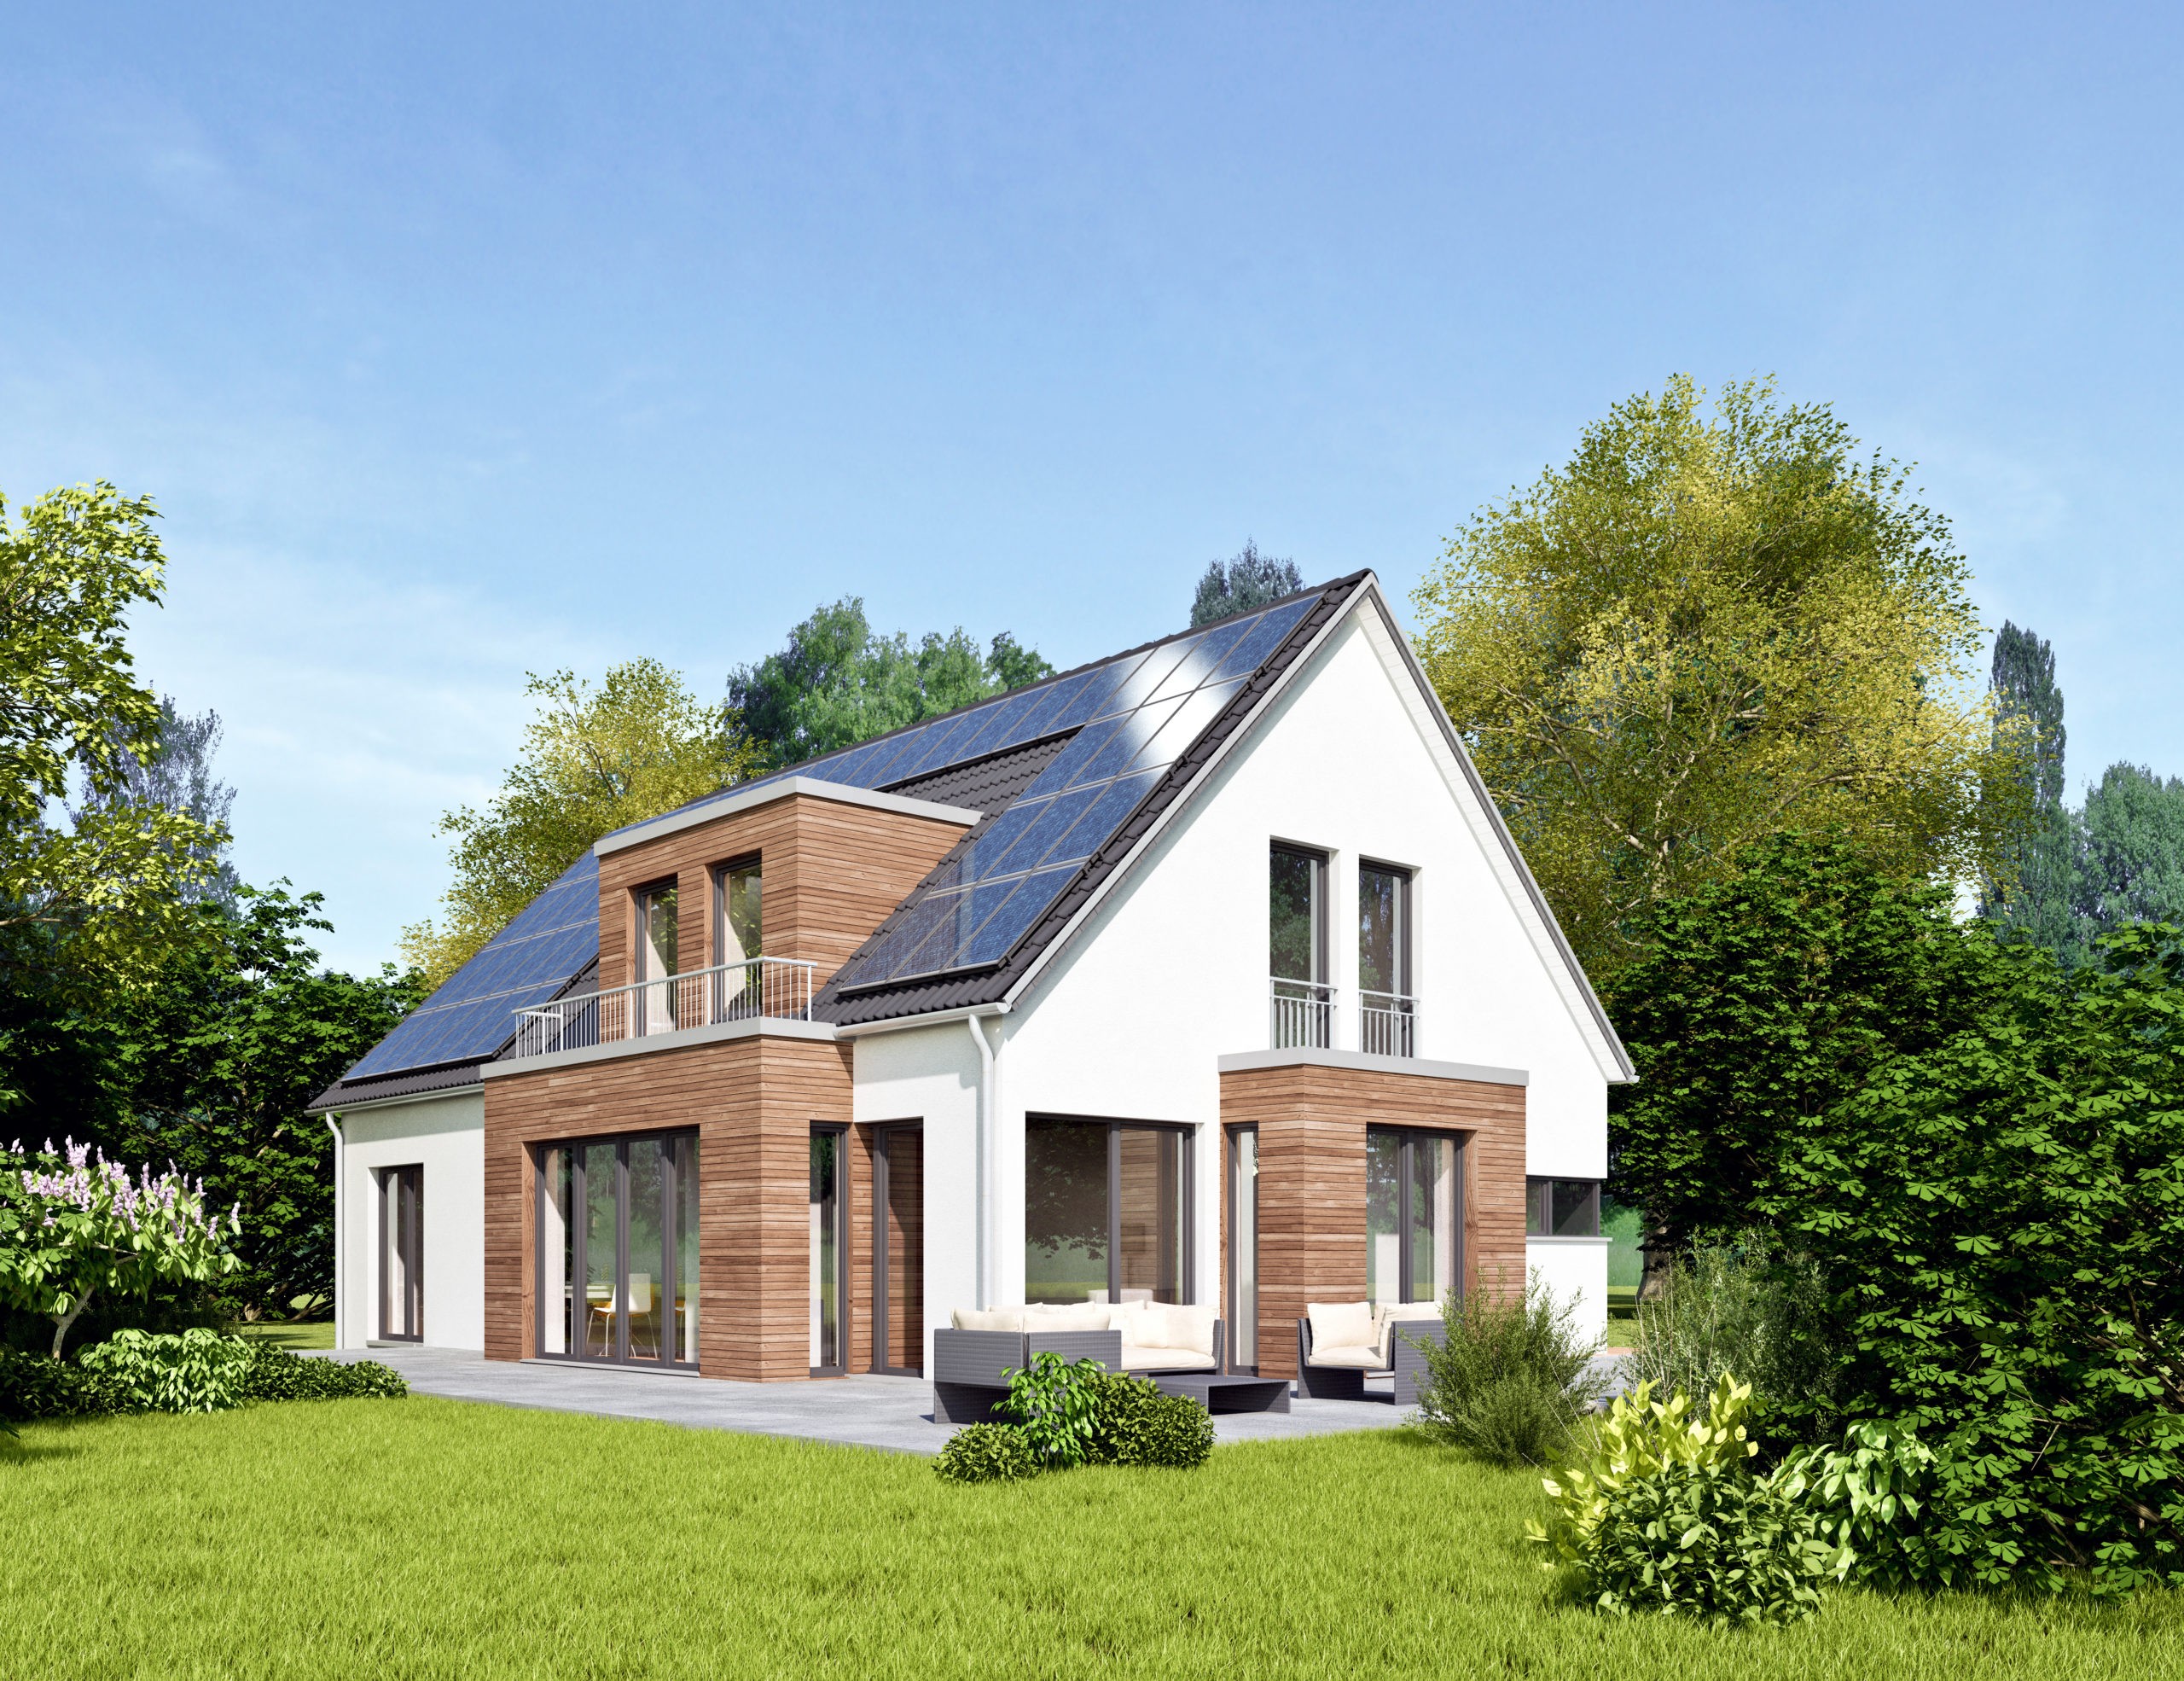 Mit Solarzellen auf dem Dach produziert man eigenen Ökostrom. Foto: AdobeStock – ©KB3